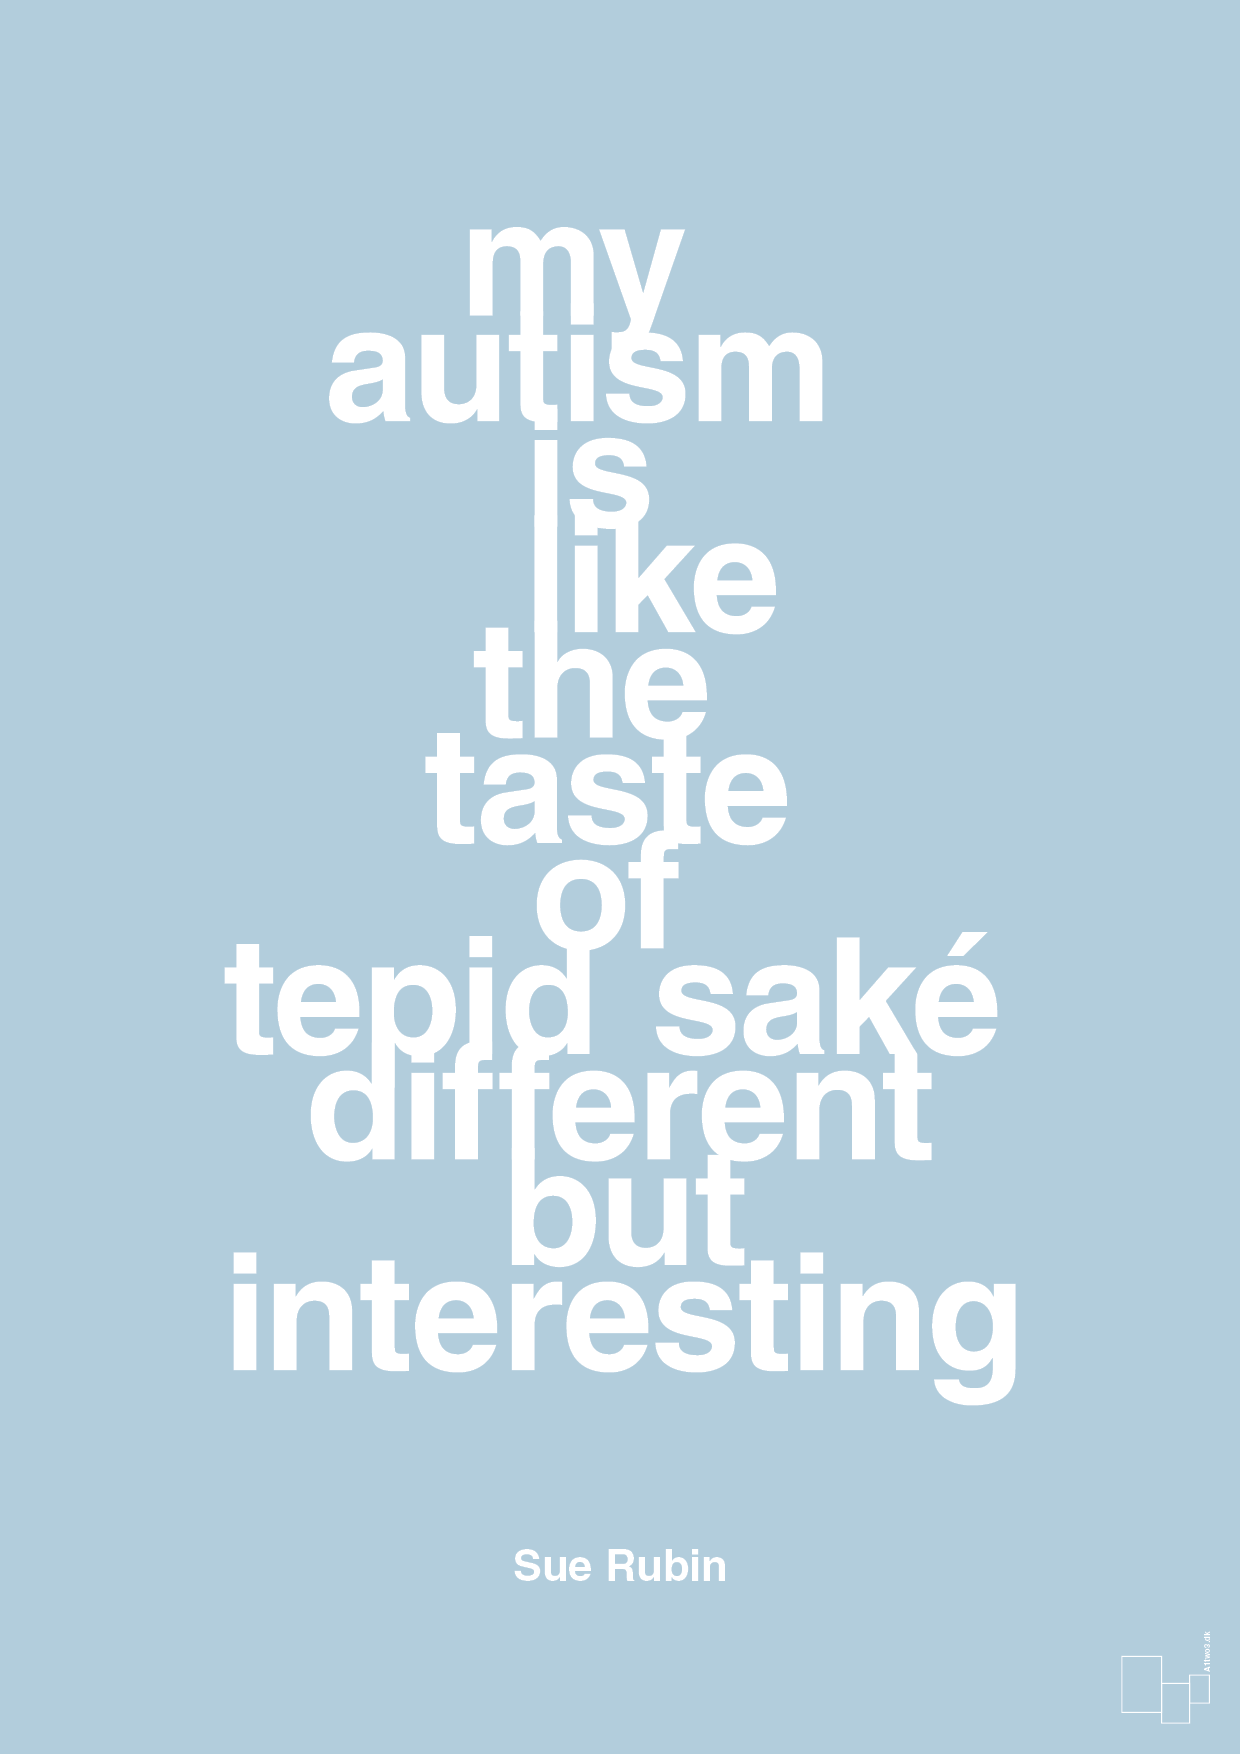 my autism is like the taste of tepid saké different but interesting - Plakat med Samfund i Heavenly Blue